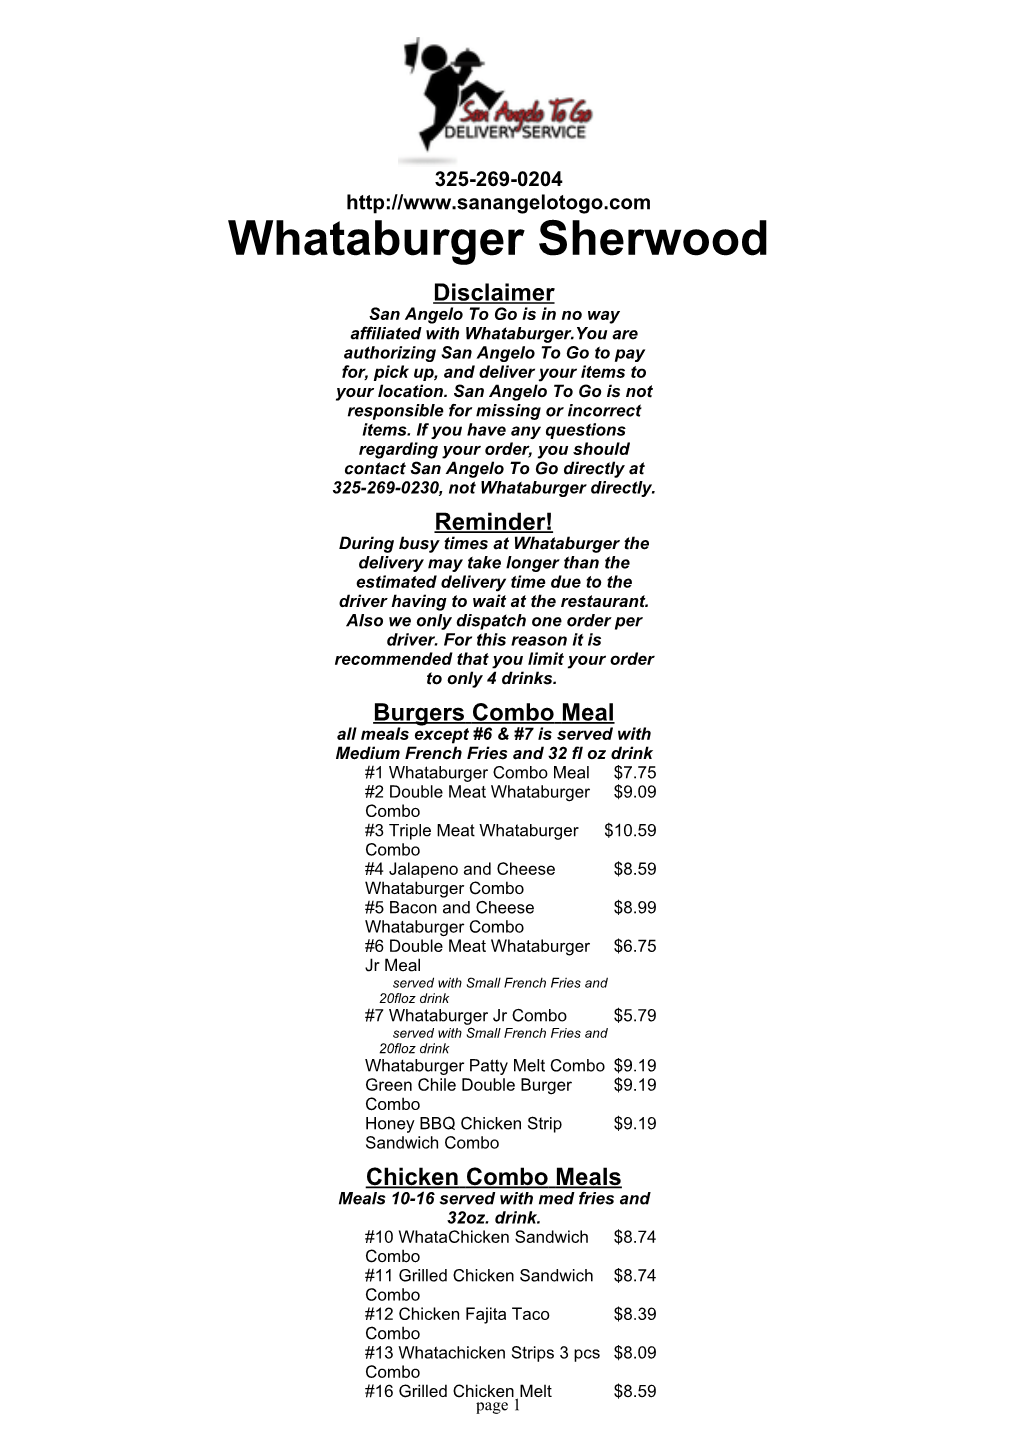 Whataburger Sherwood